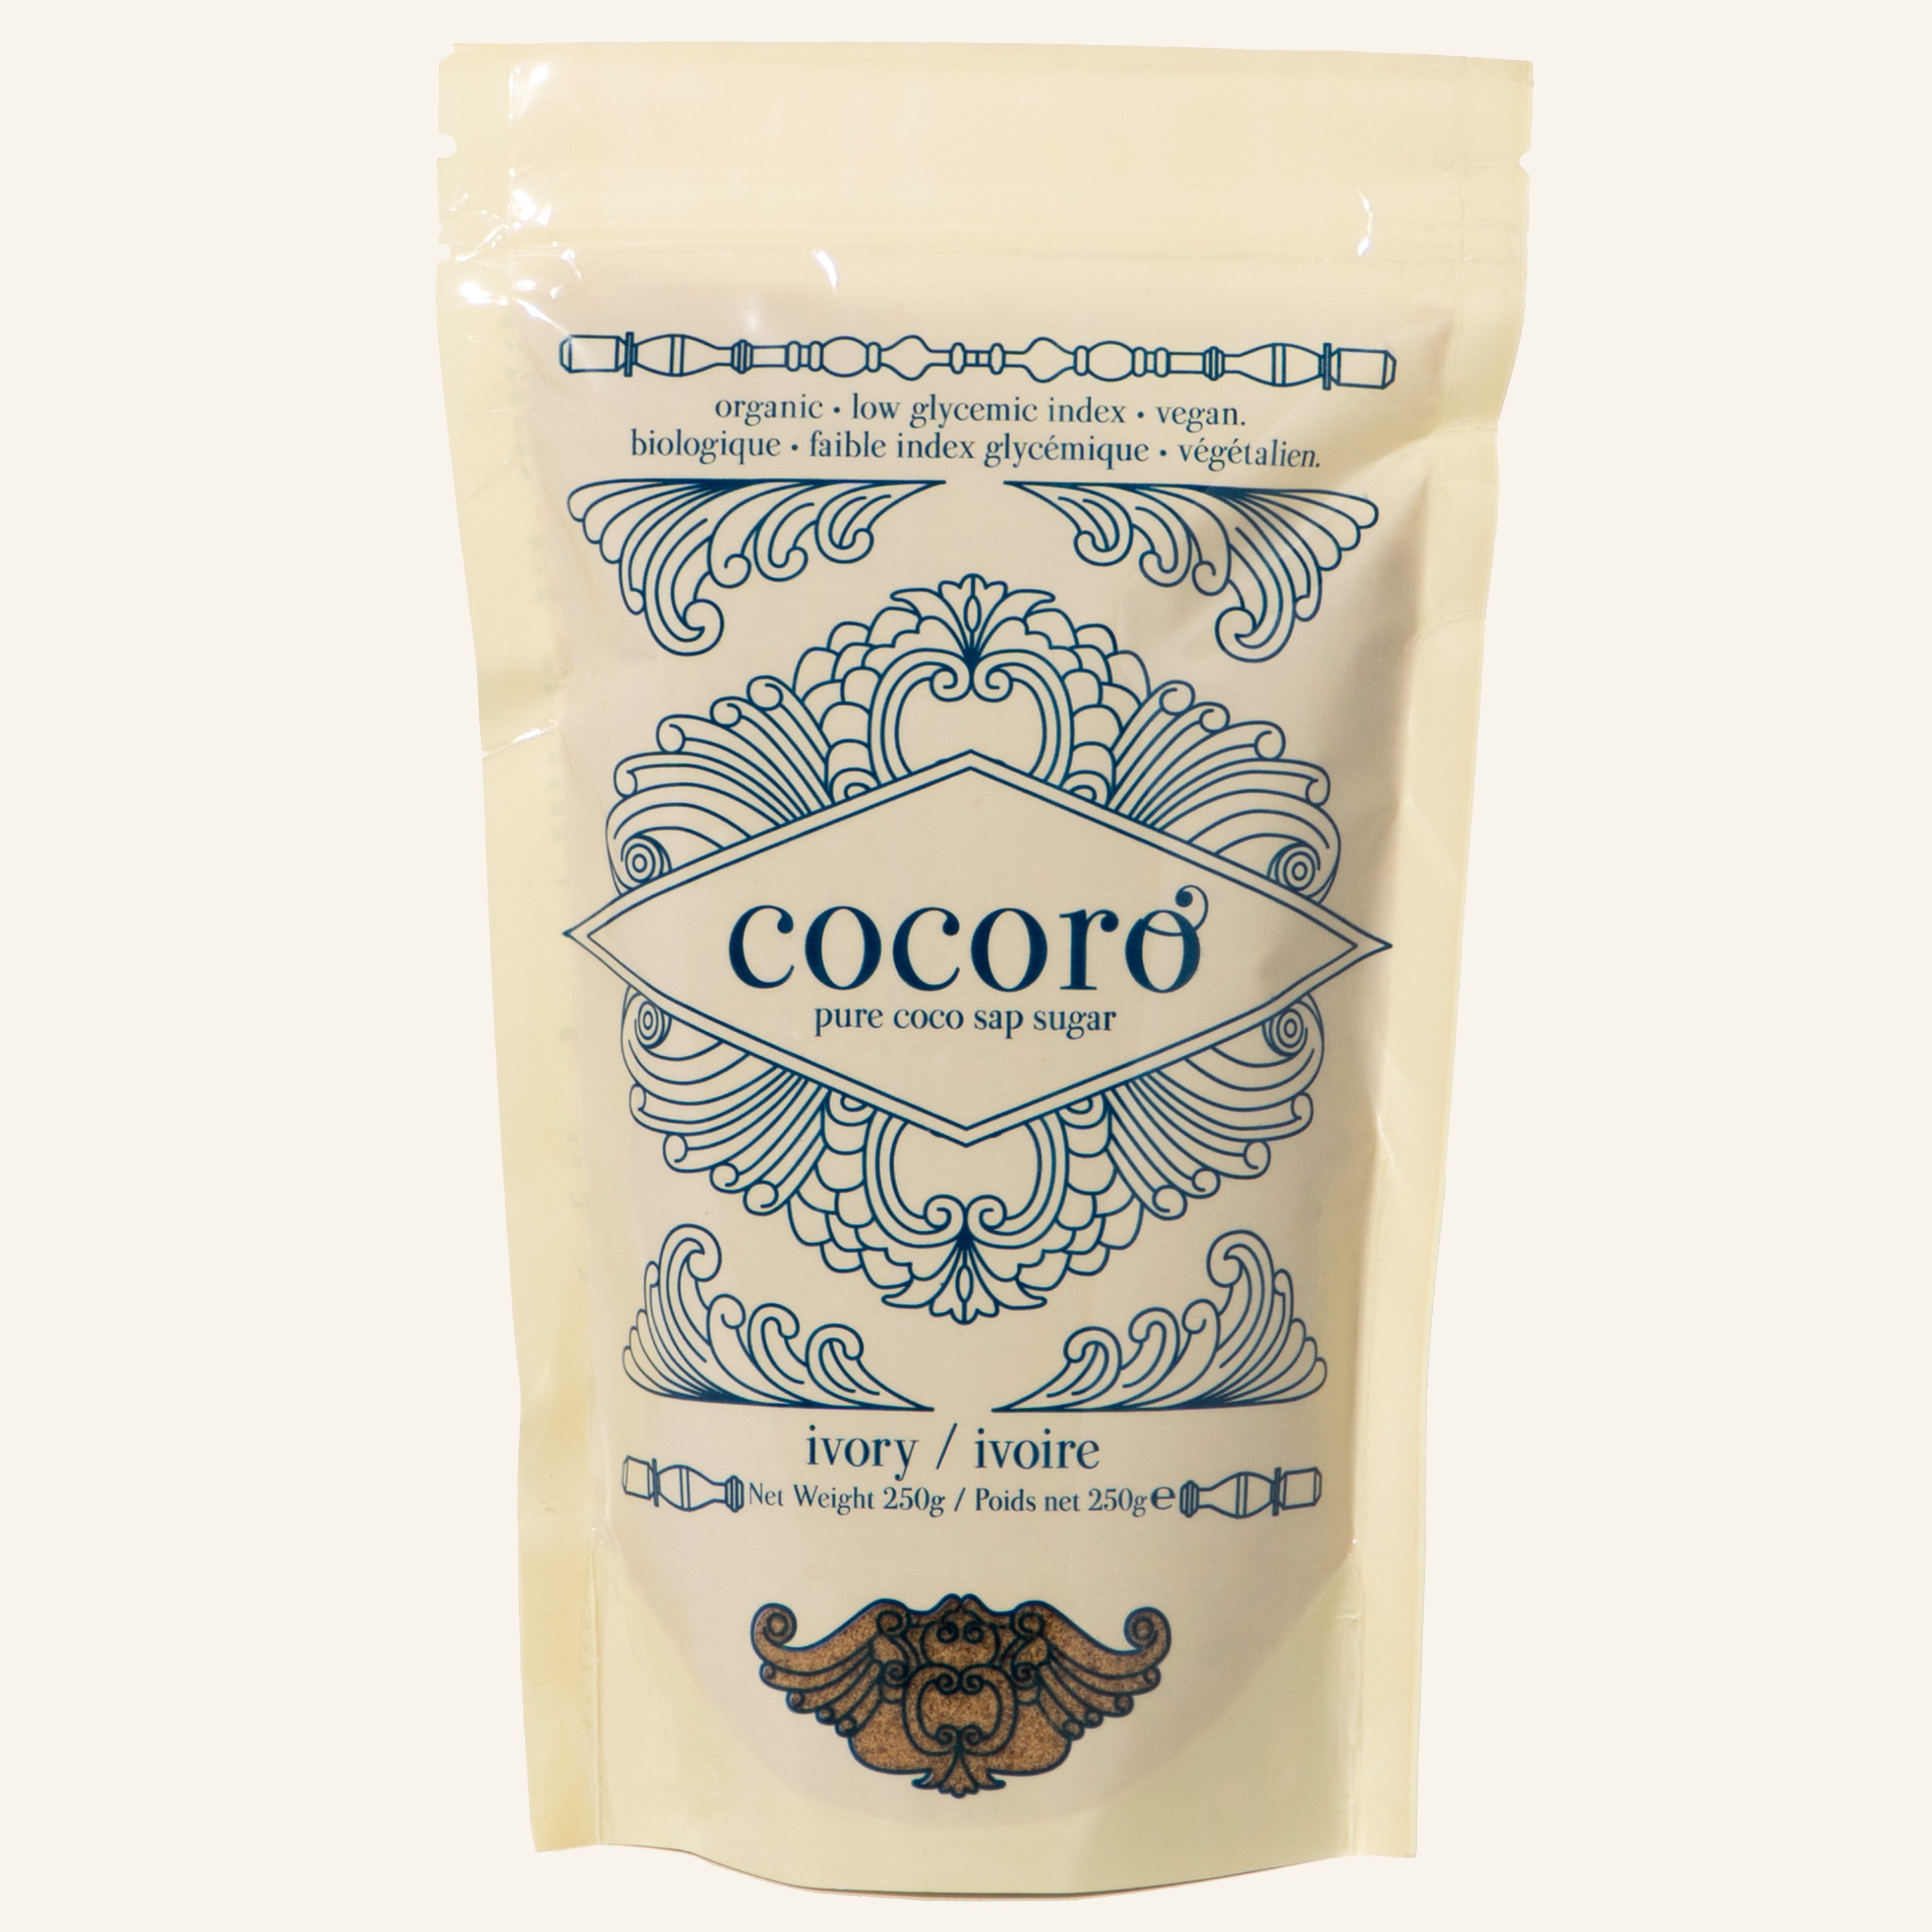 Cocoro Ivory Organic Coco Sugar